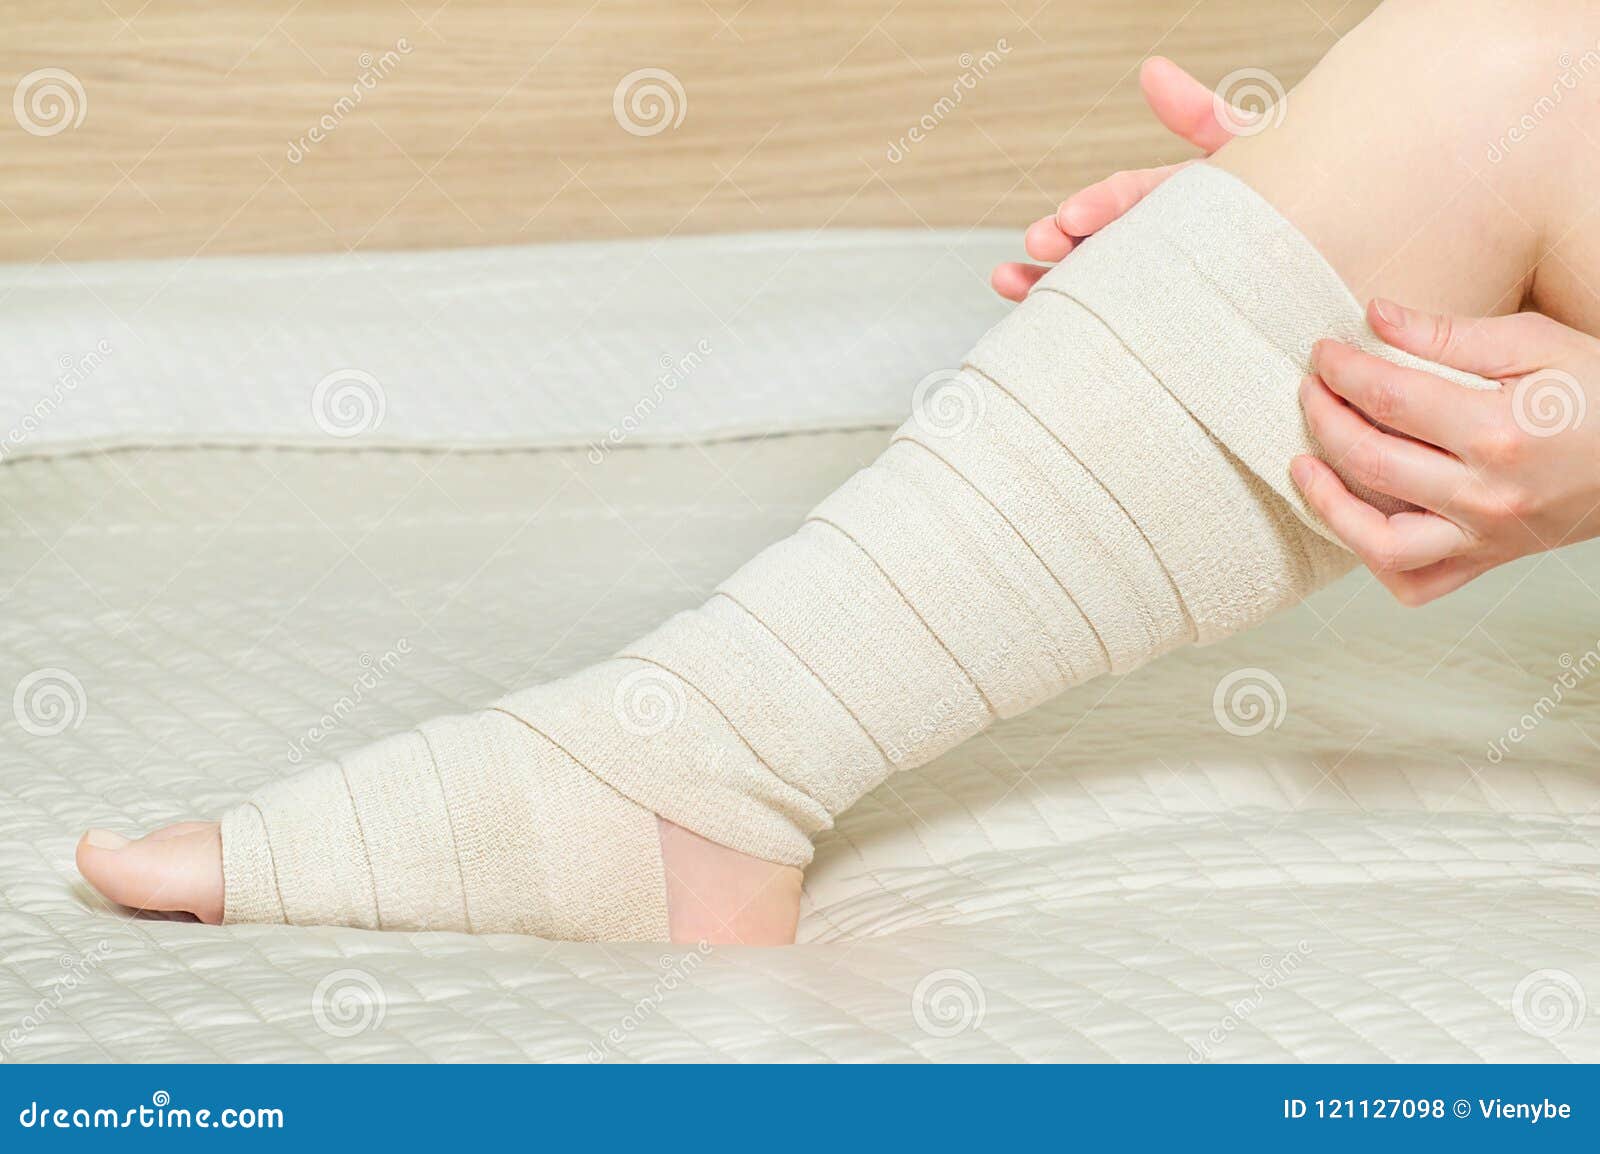 bandage elastica dupa îndepartarea varicozei